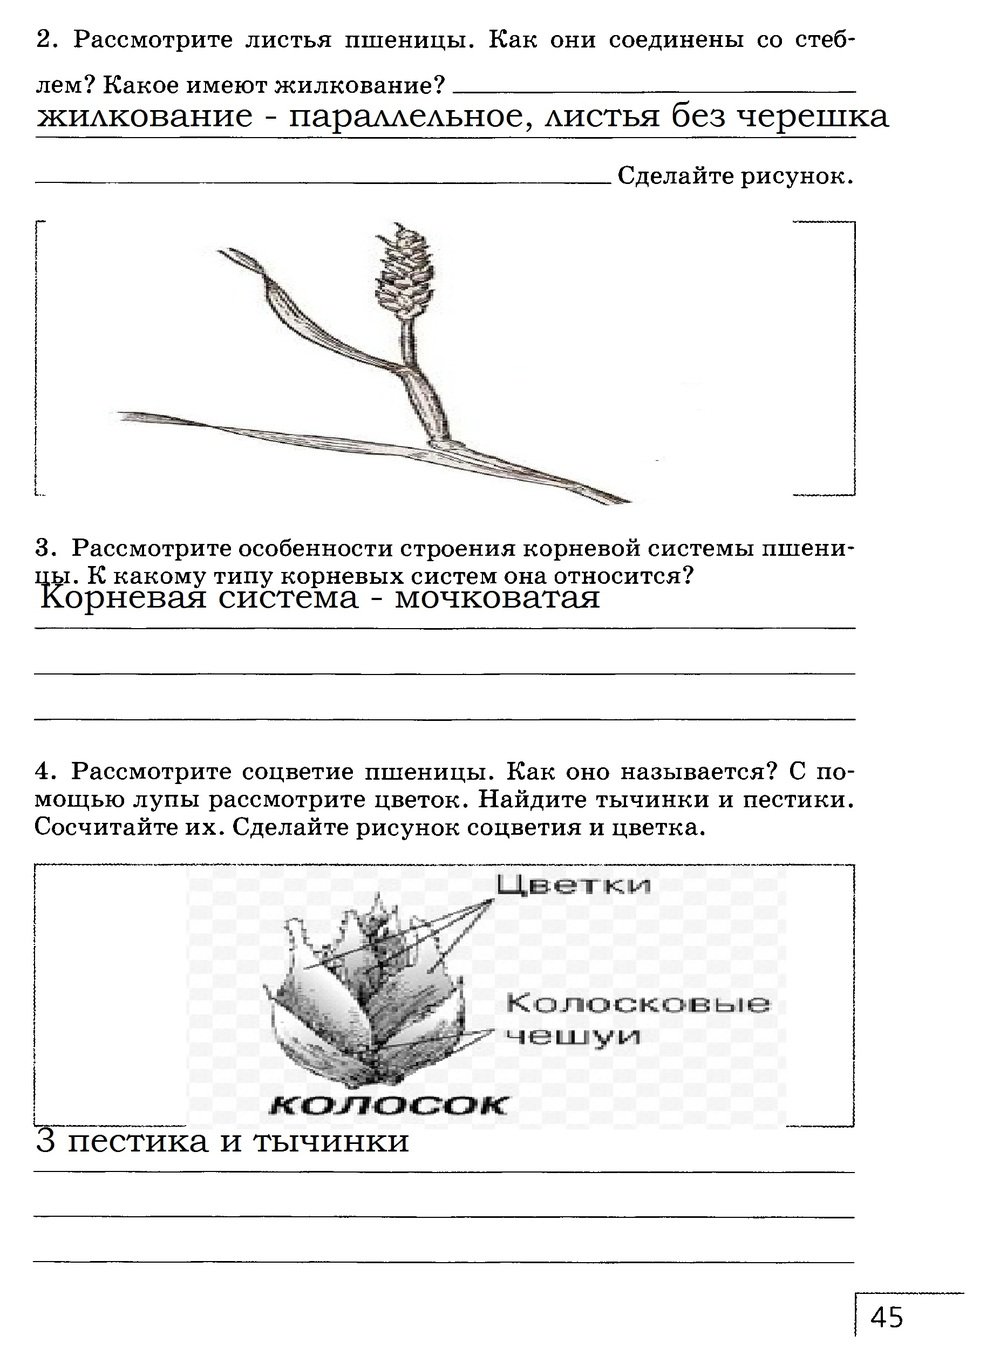 гдз 7 класс рабочая тетрадь страница 45 биология Захаров, Сонин